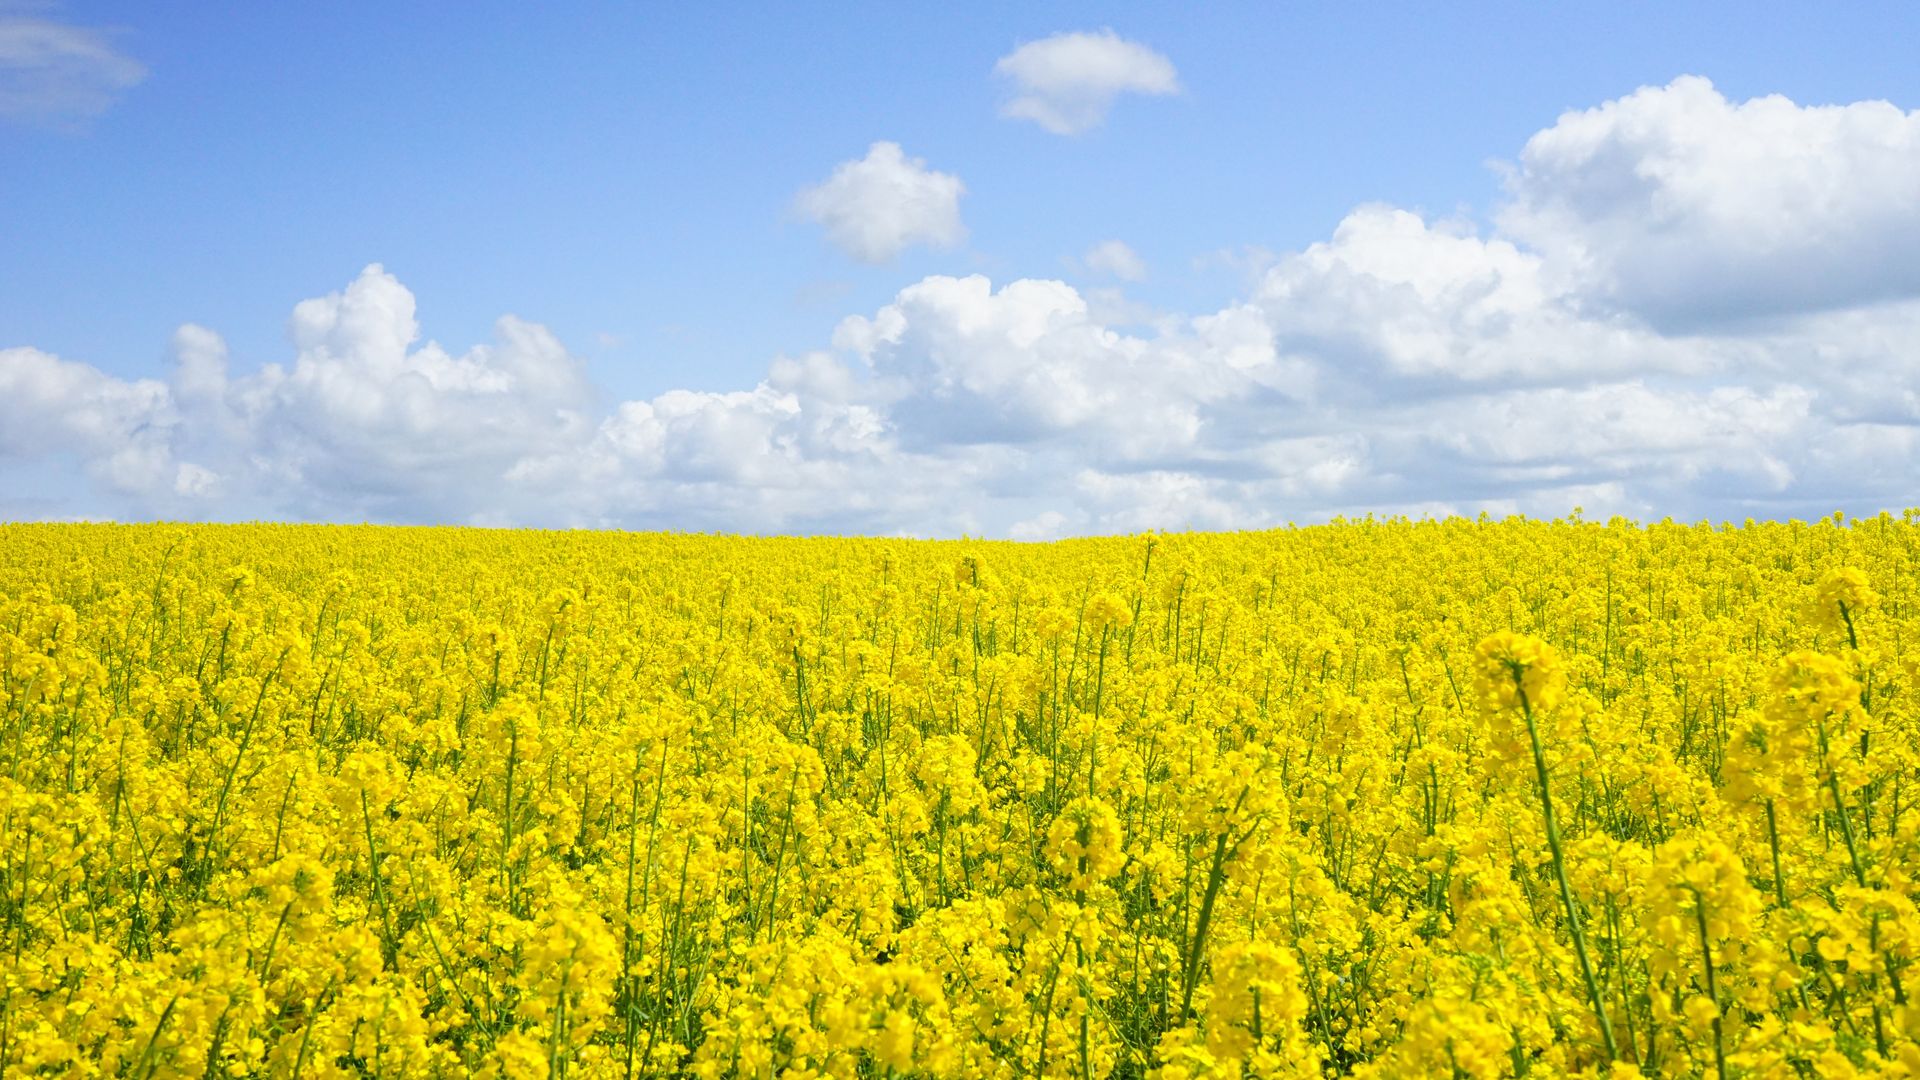 Yellow Flower Field Under Blue Cloudy Sky - Yellow Field Of Flowers - HD Wallpaper 